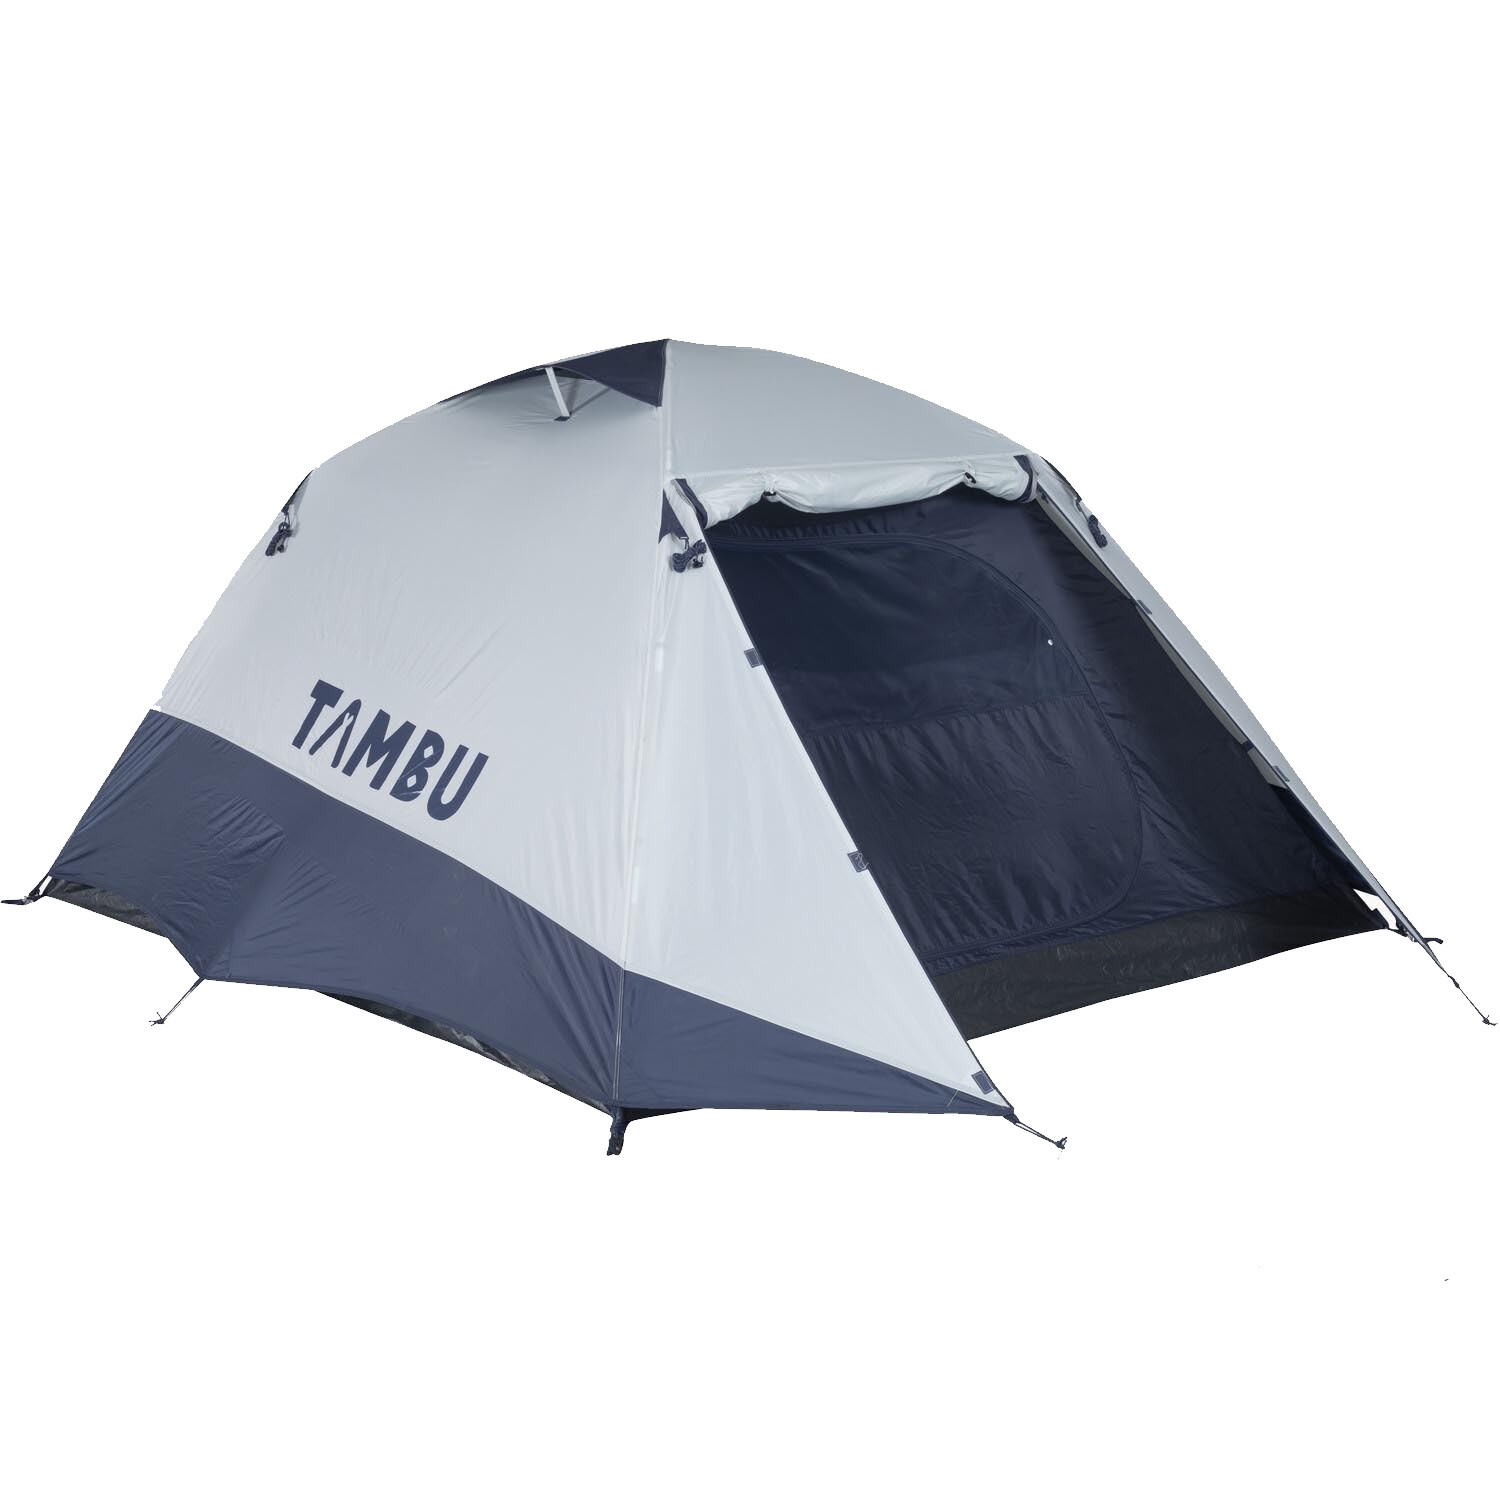 Tambu GAMBUJA Dome Tent - Three Image 1